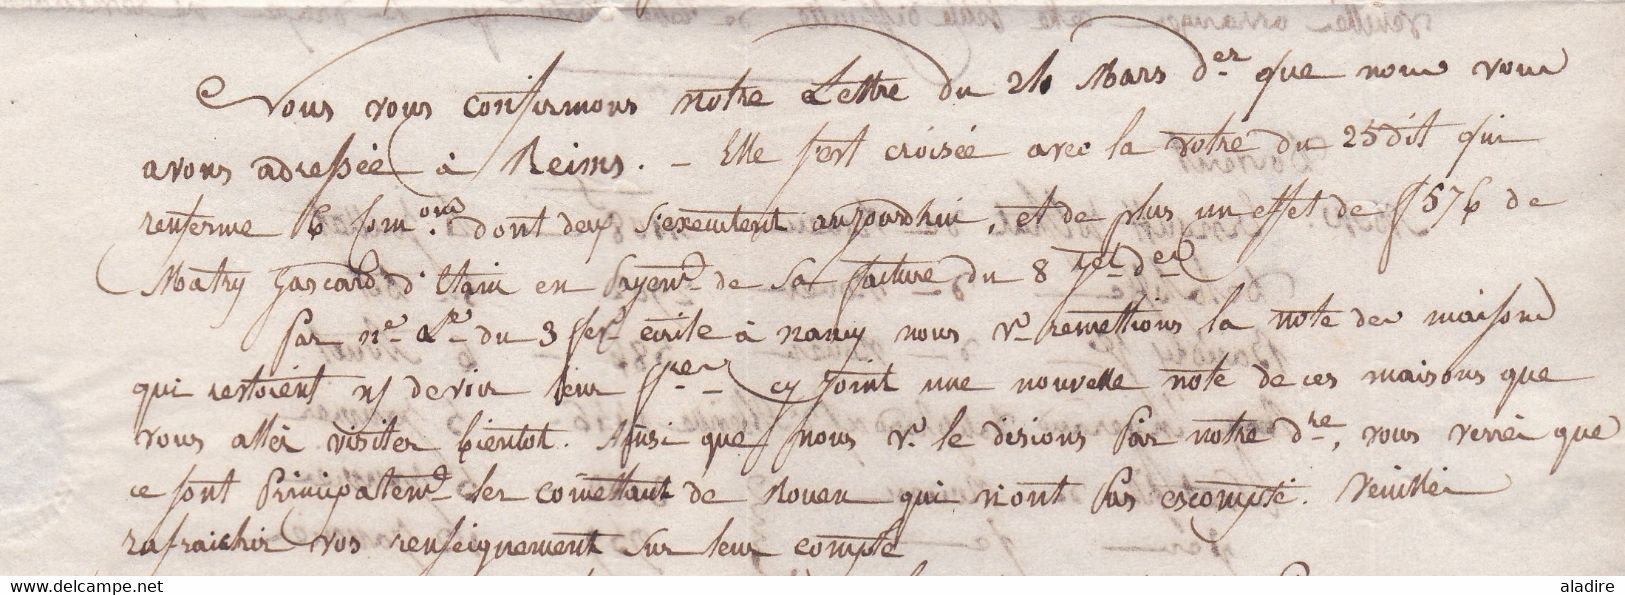 1837 - LAC de BEDARRIEUX ( cad fleurons) vers AMIENS - POSTE RESTANTE - taxe 10 - cad arrivée